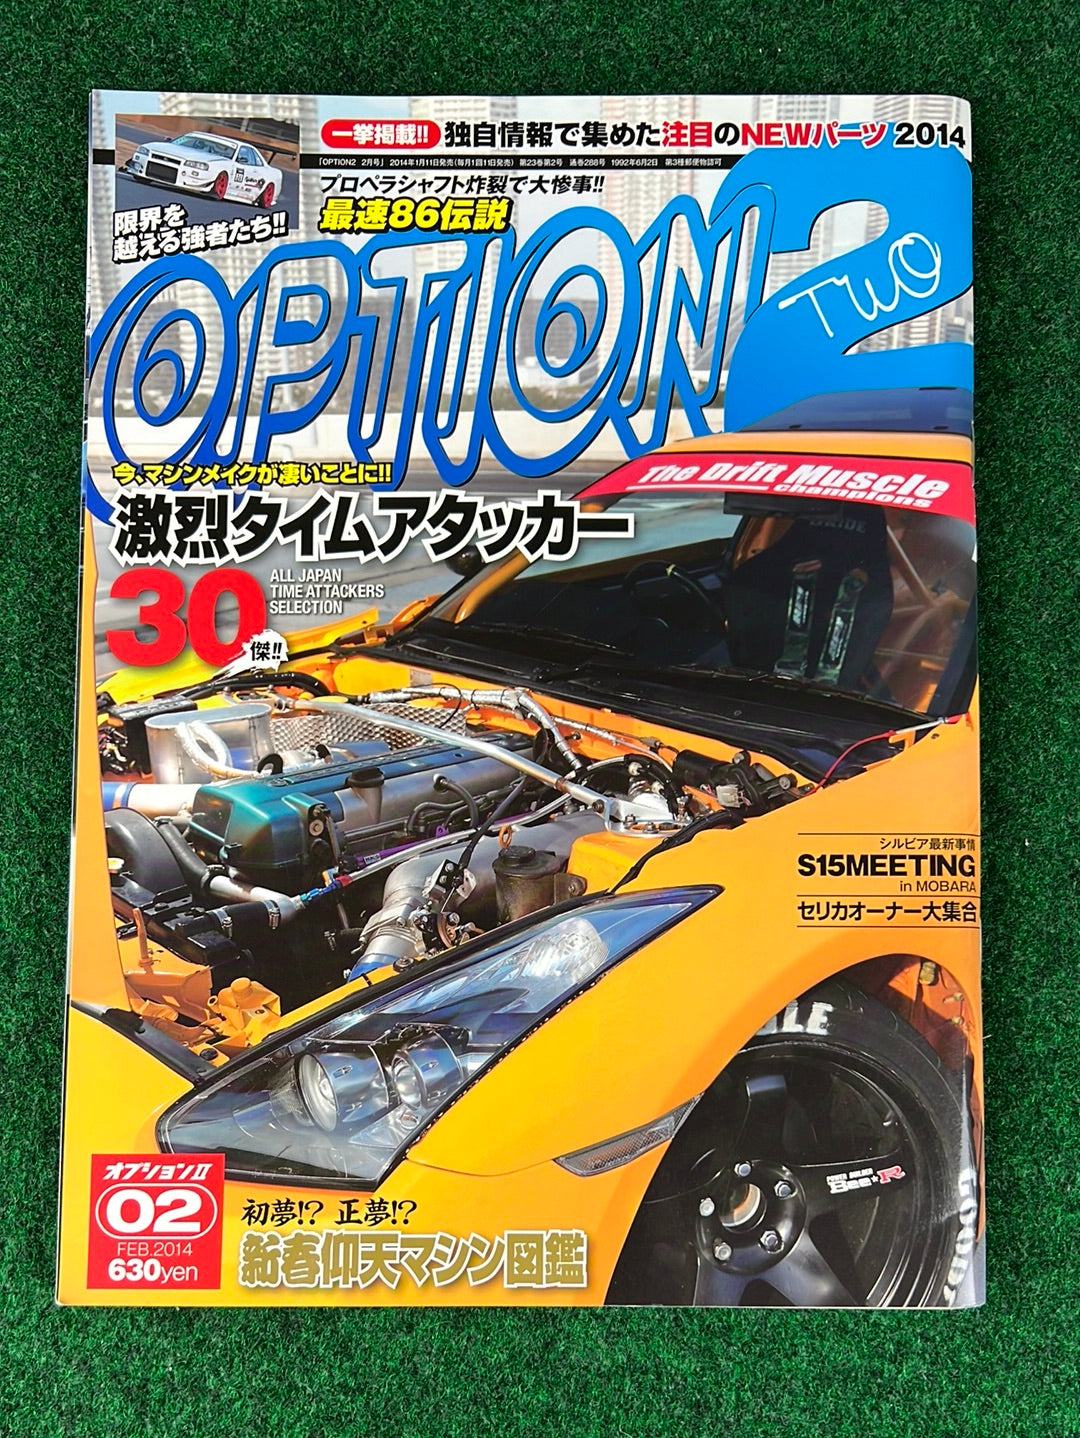 Option2 Magazine - February 2014